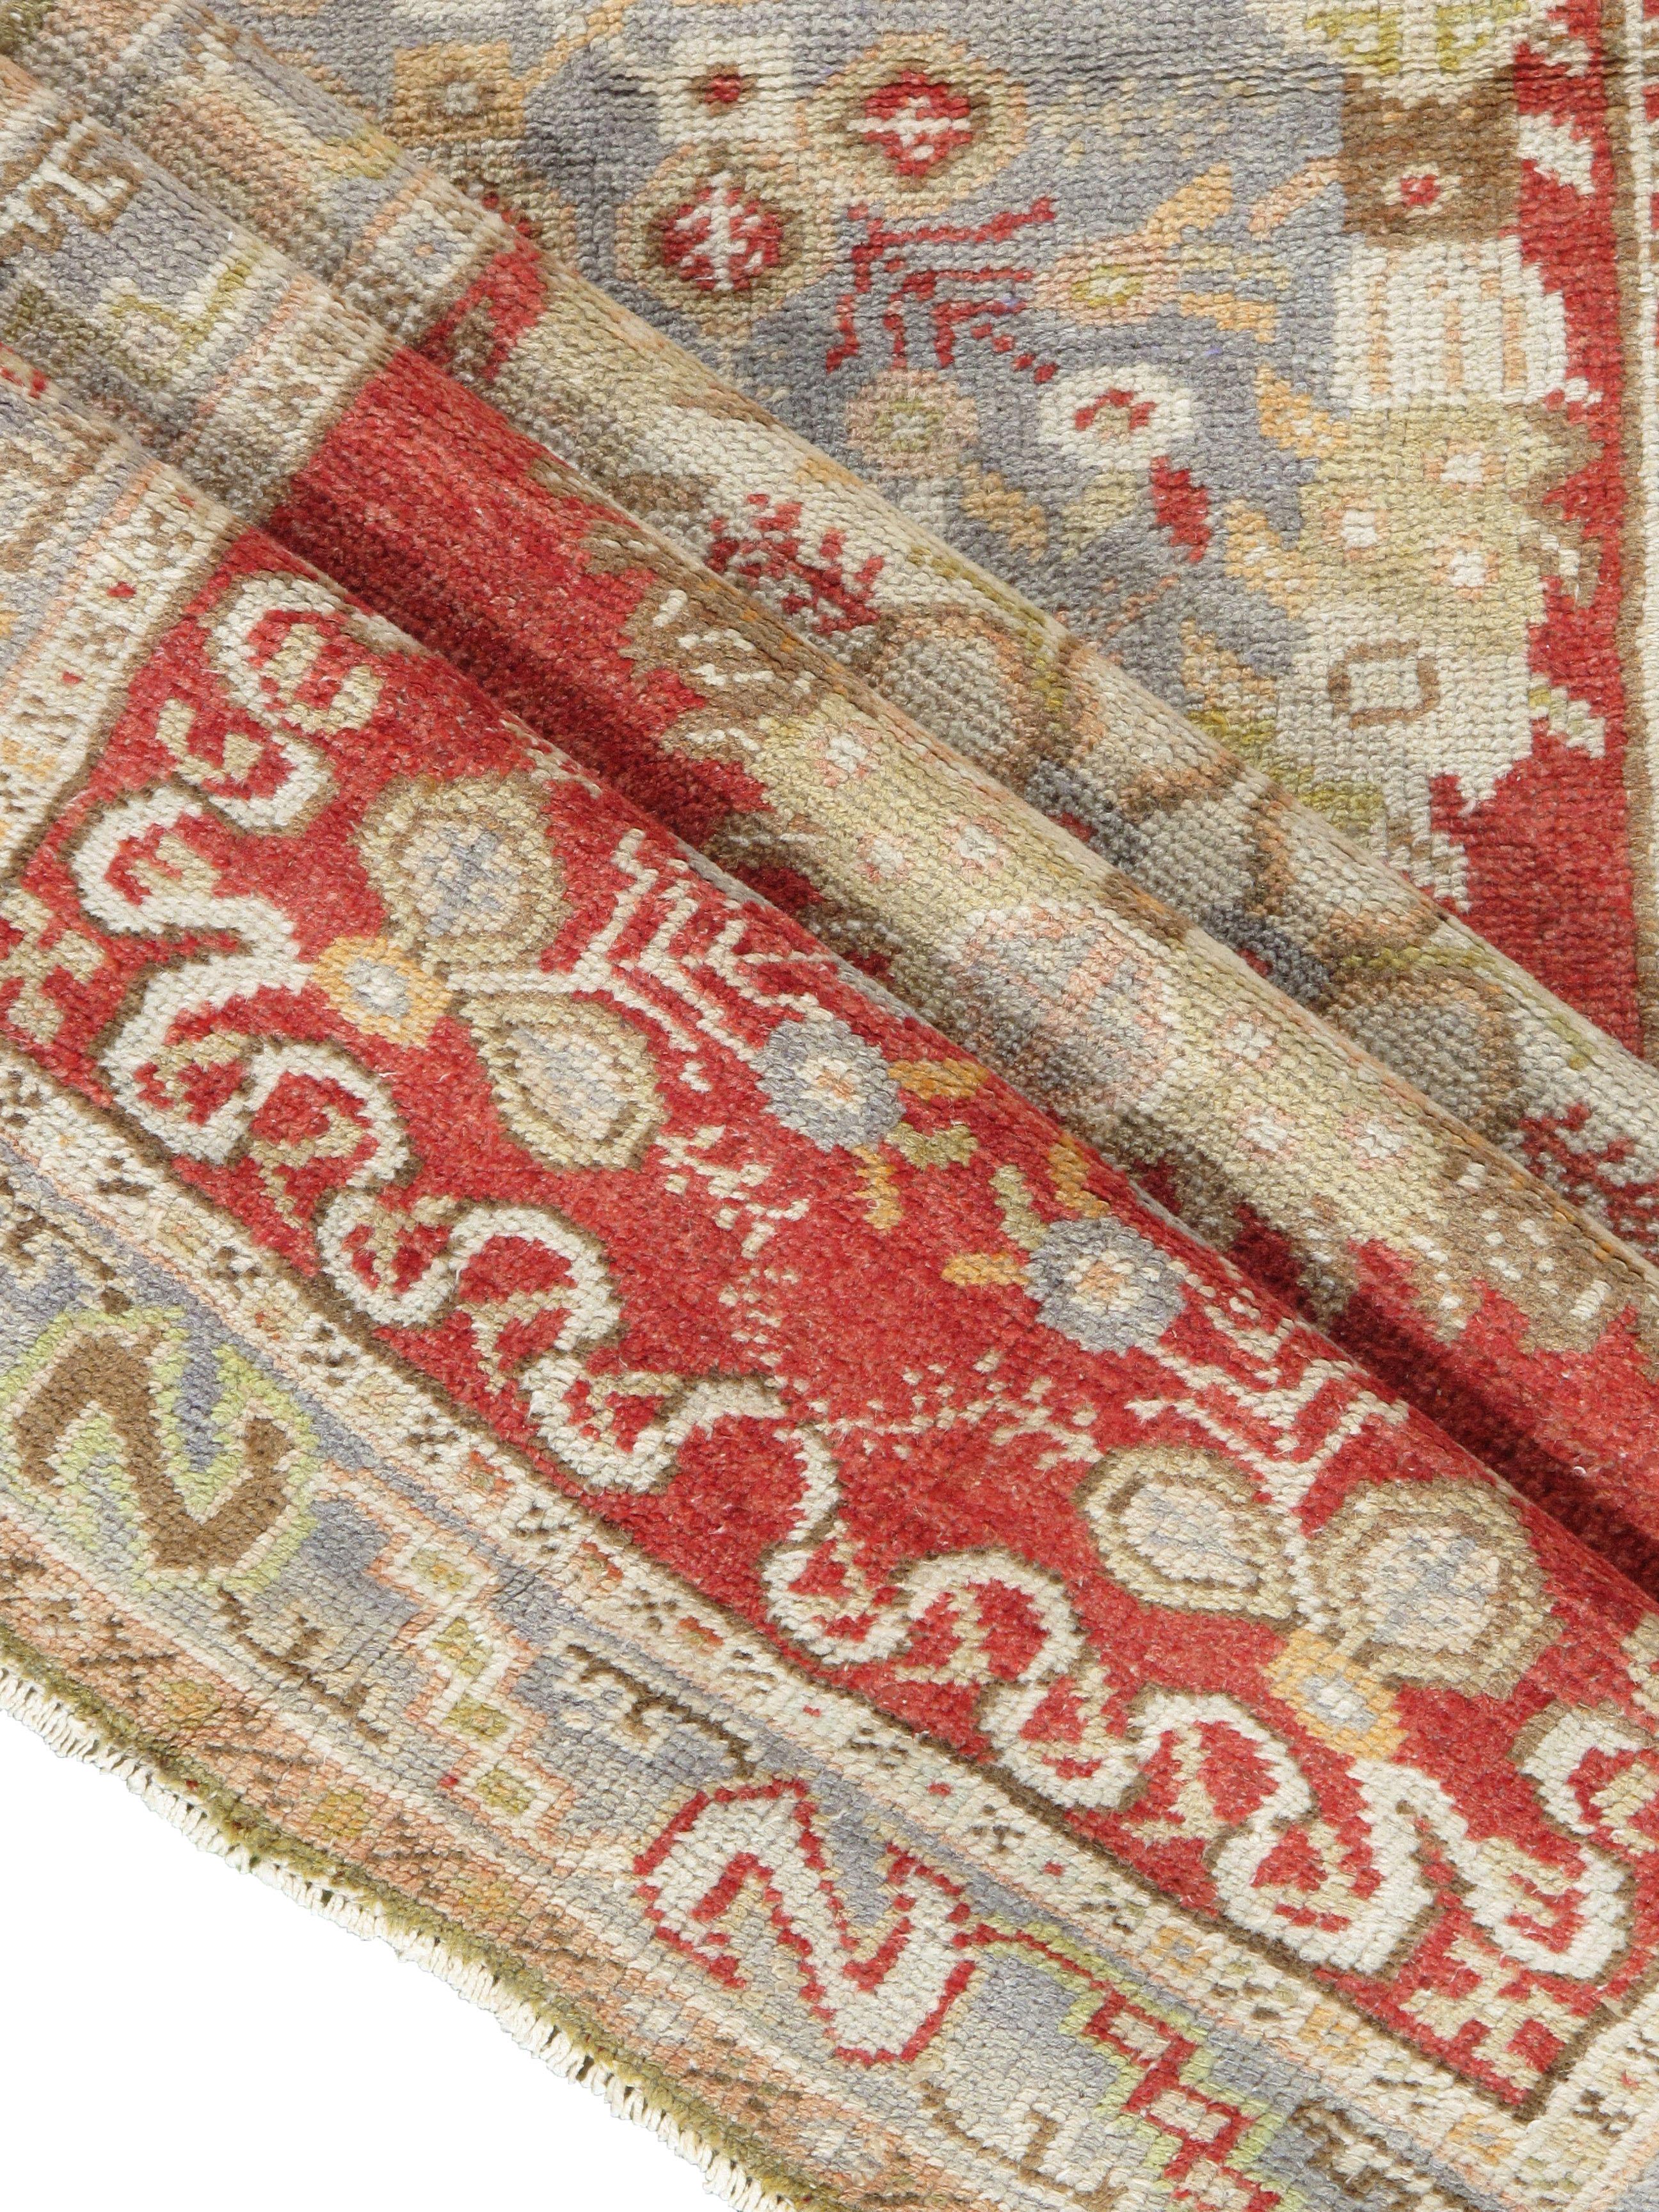 Tapis de course vintage turc Oushak, 2'11 x 11'. Tissé à la main en Turquie, où le tissage de tapis est une culture plutôt qu'une activité commerciale. Les tapis de Turquie sont réputés pour la haute qualité de leur laine, leurs beaux motifs et